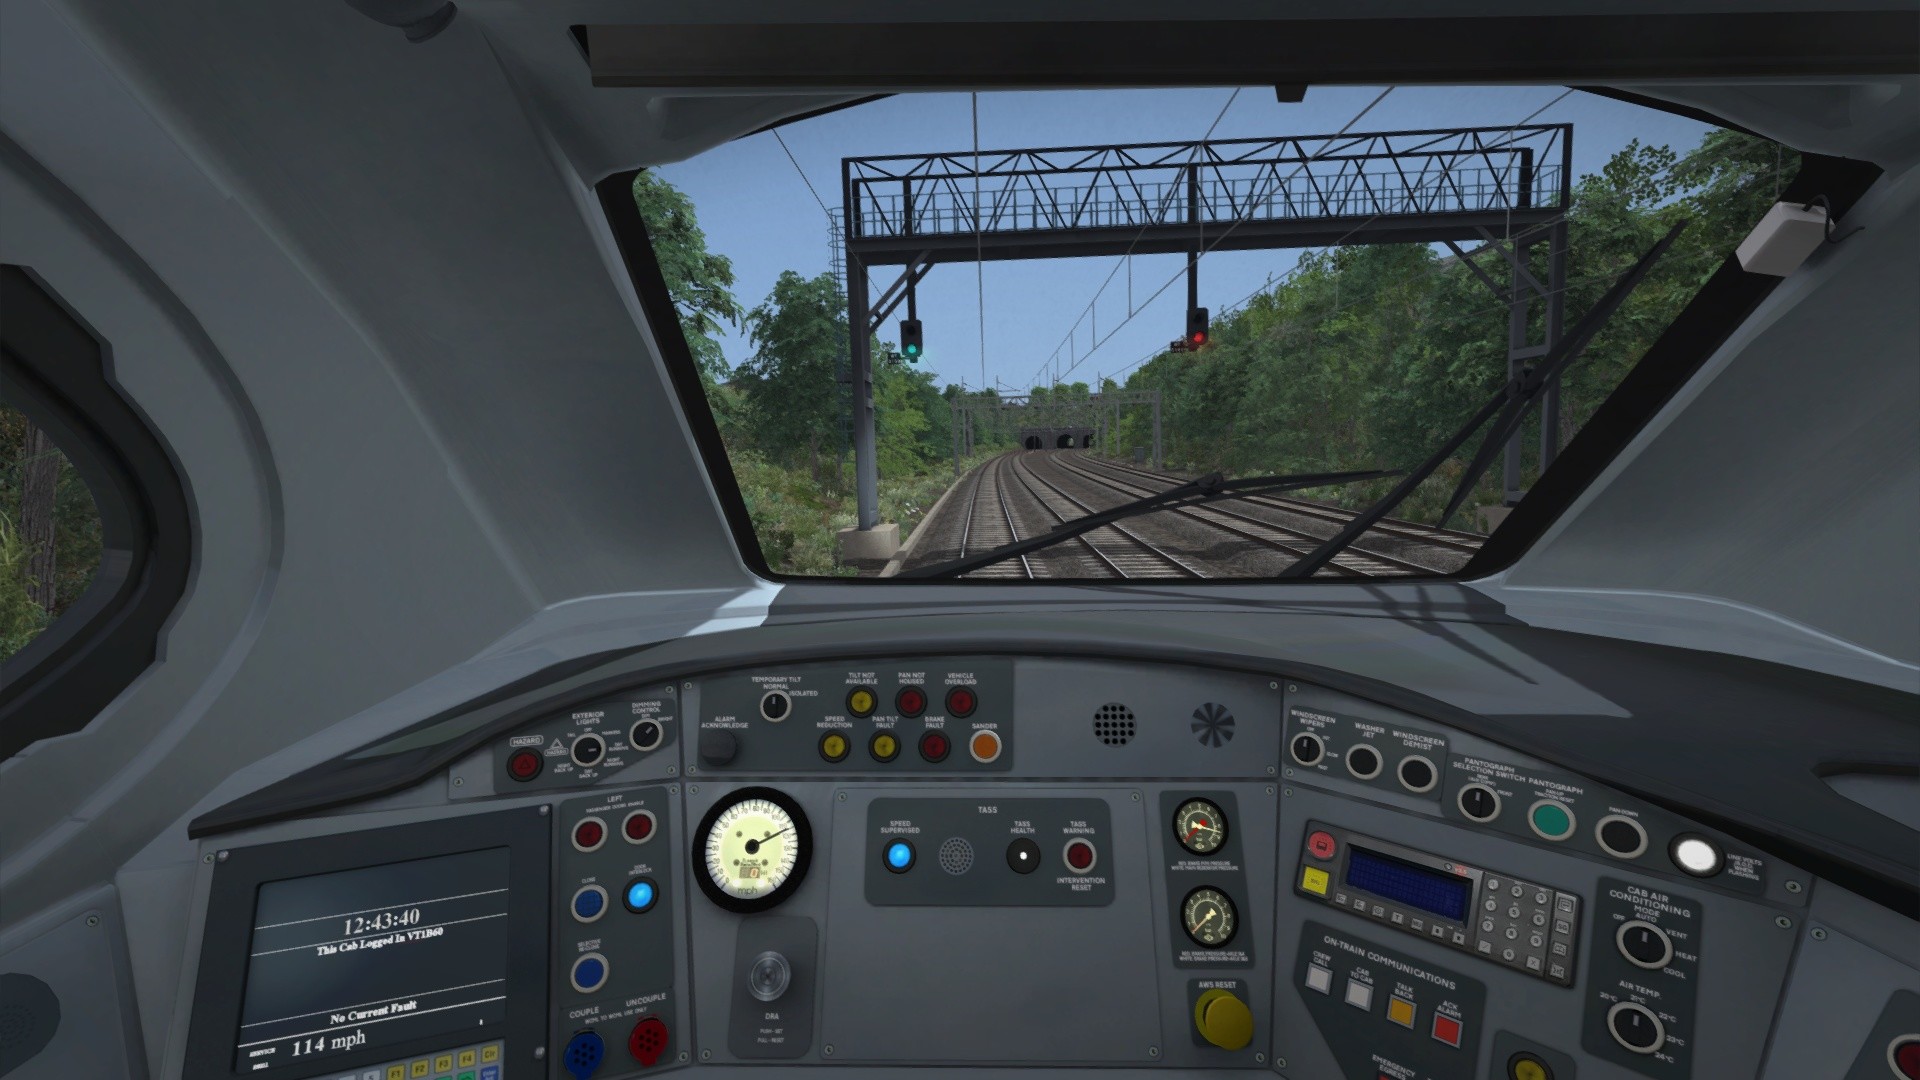 Train Simulator Classic EU Steam CD Key